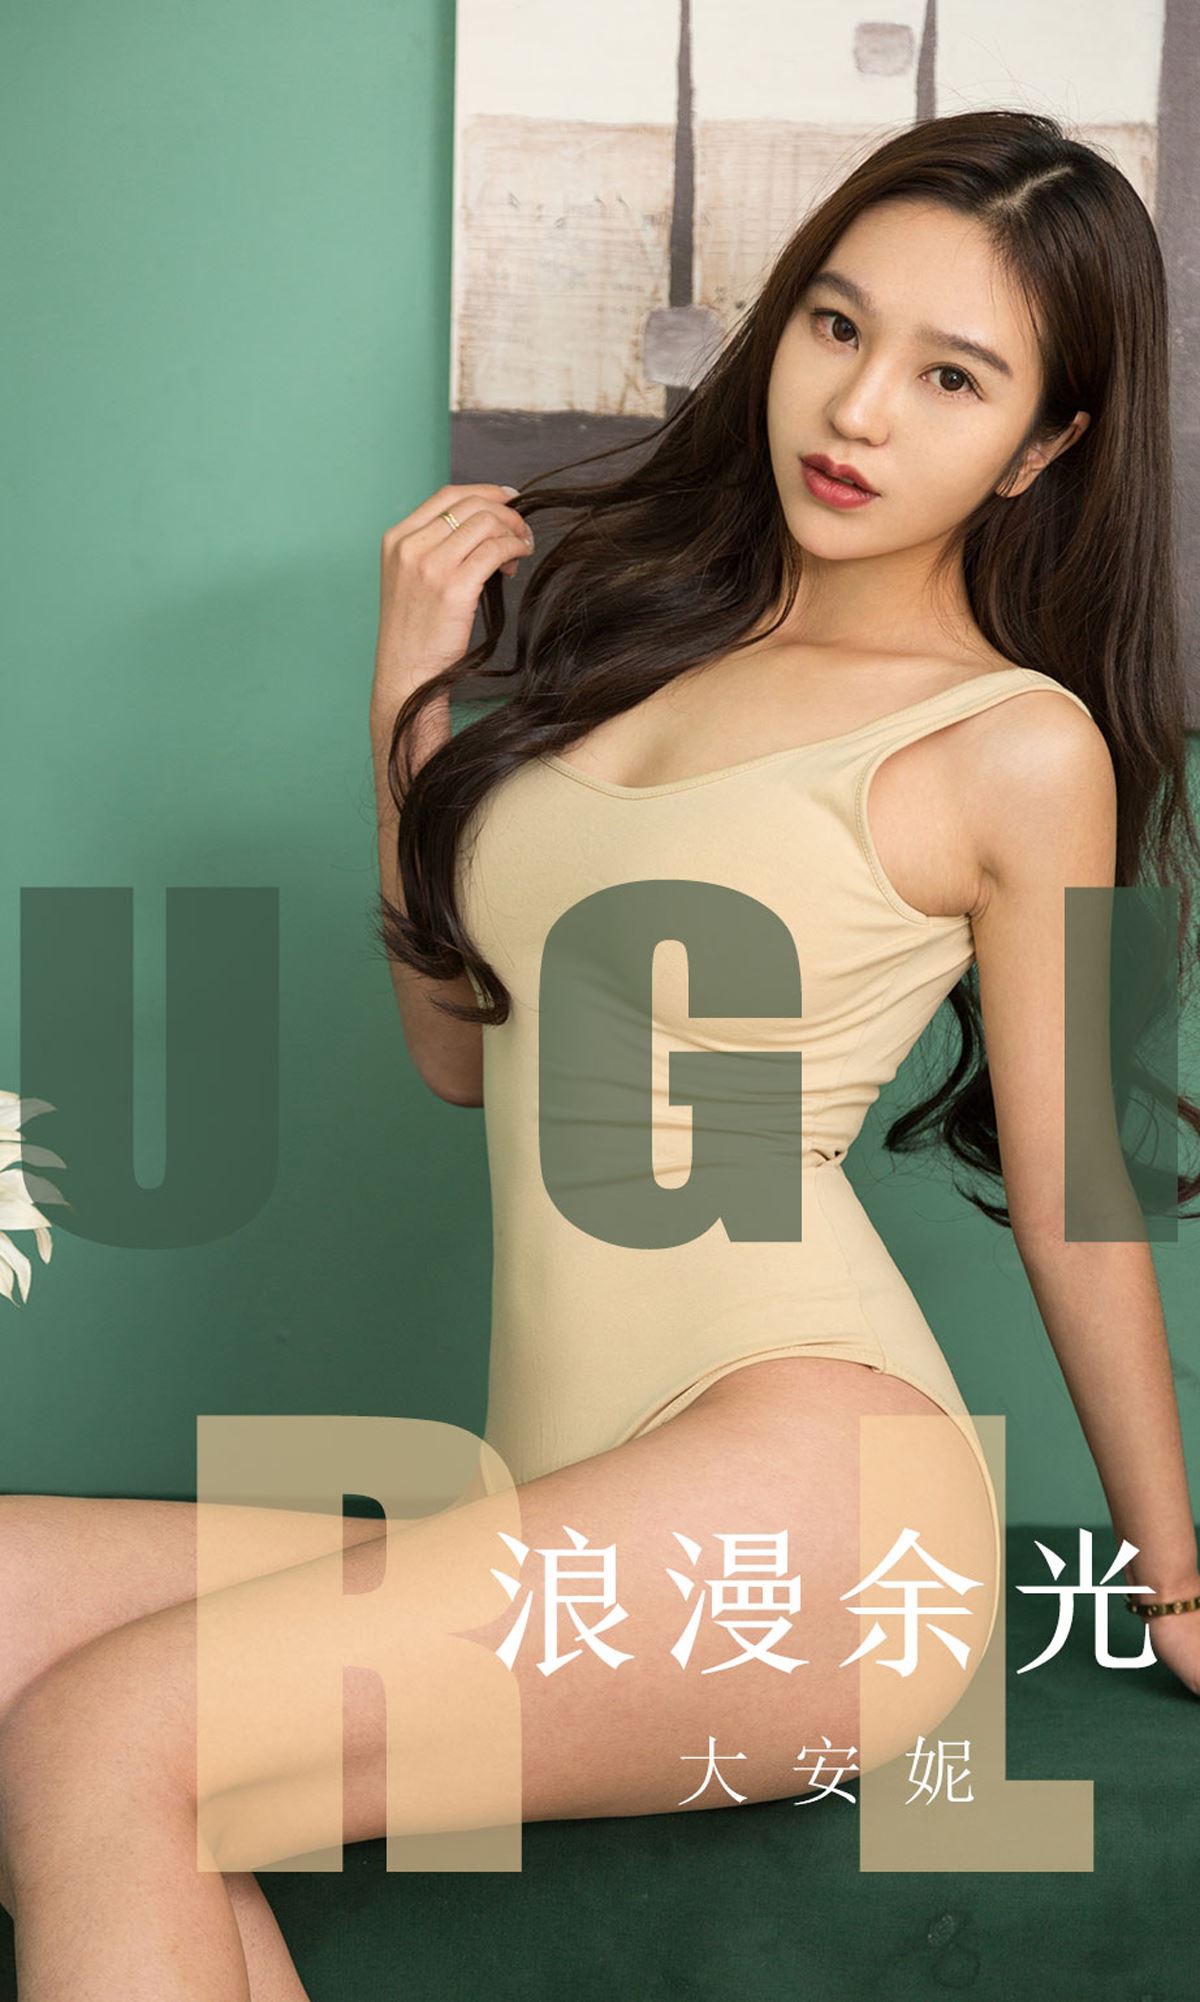 Ugirls love beauty magazine no.1635